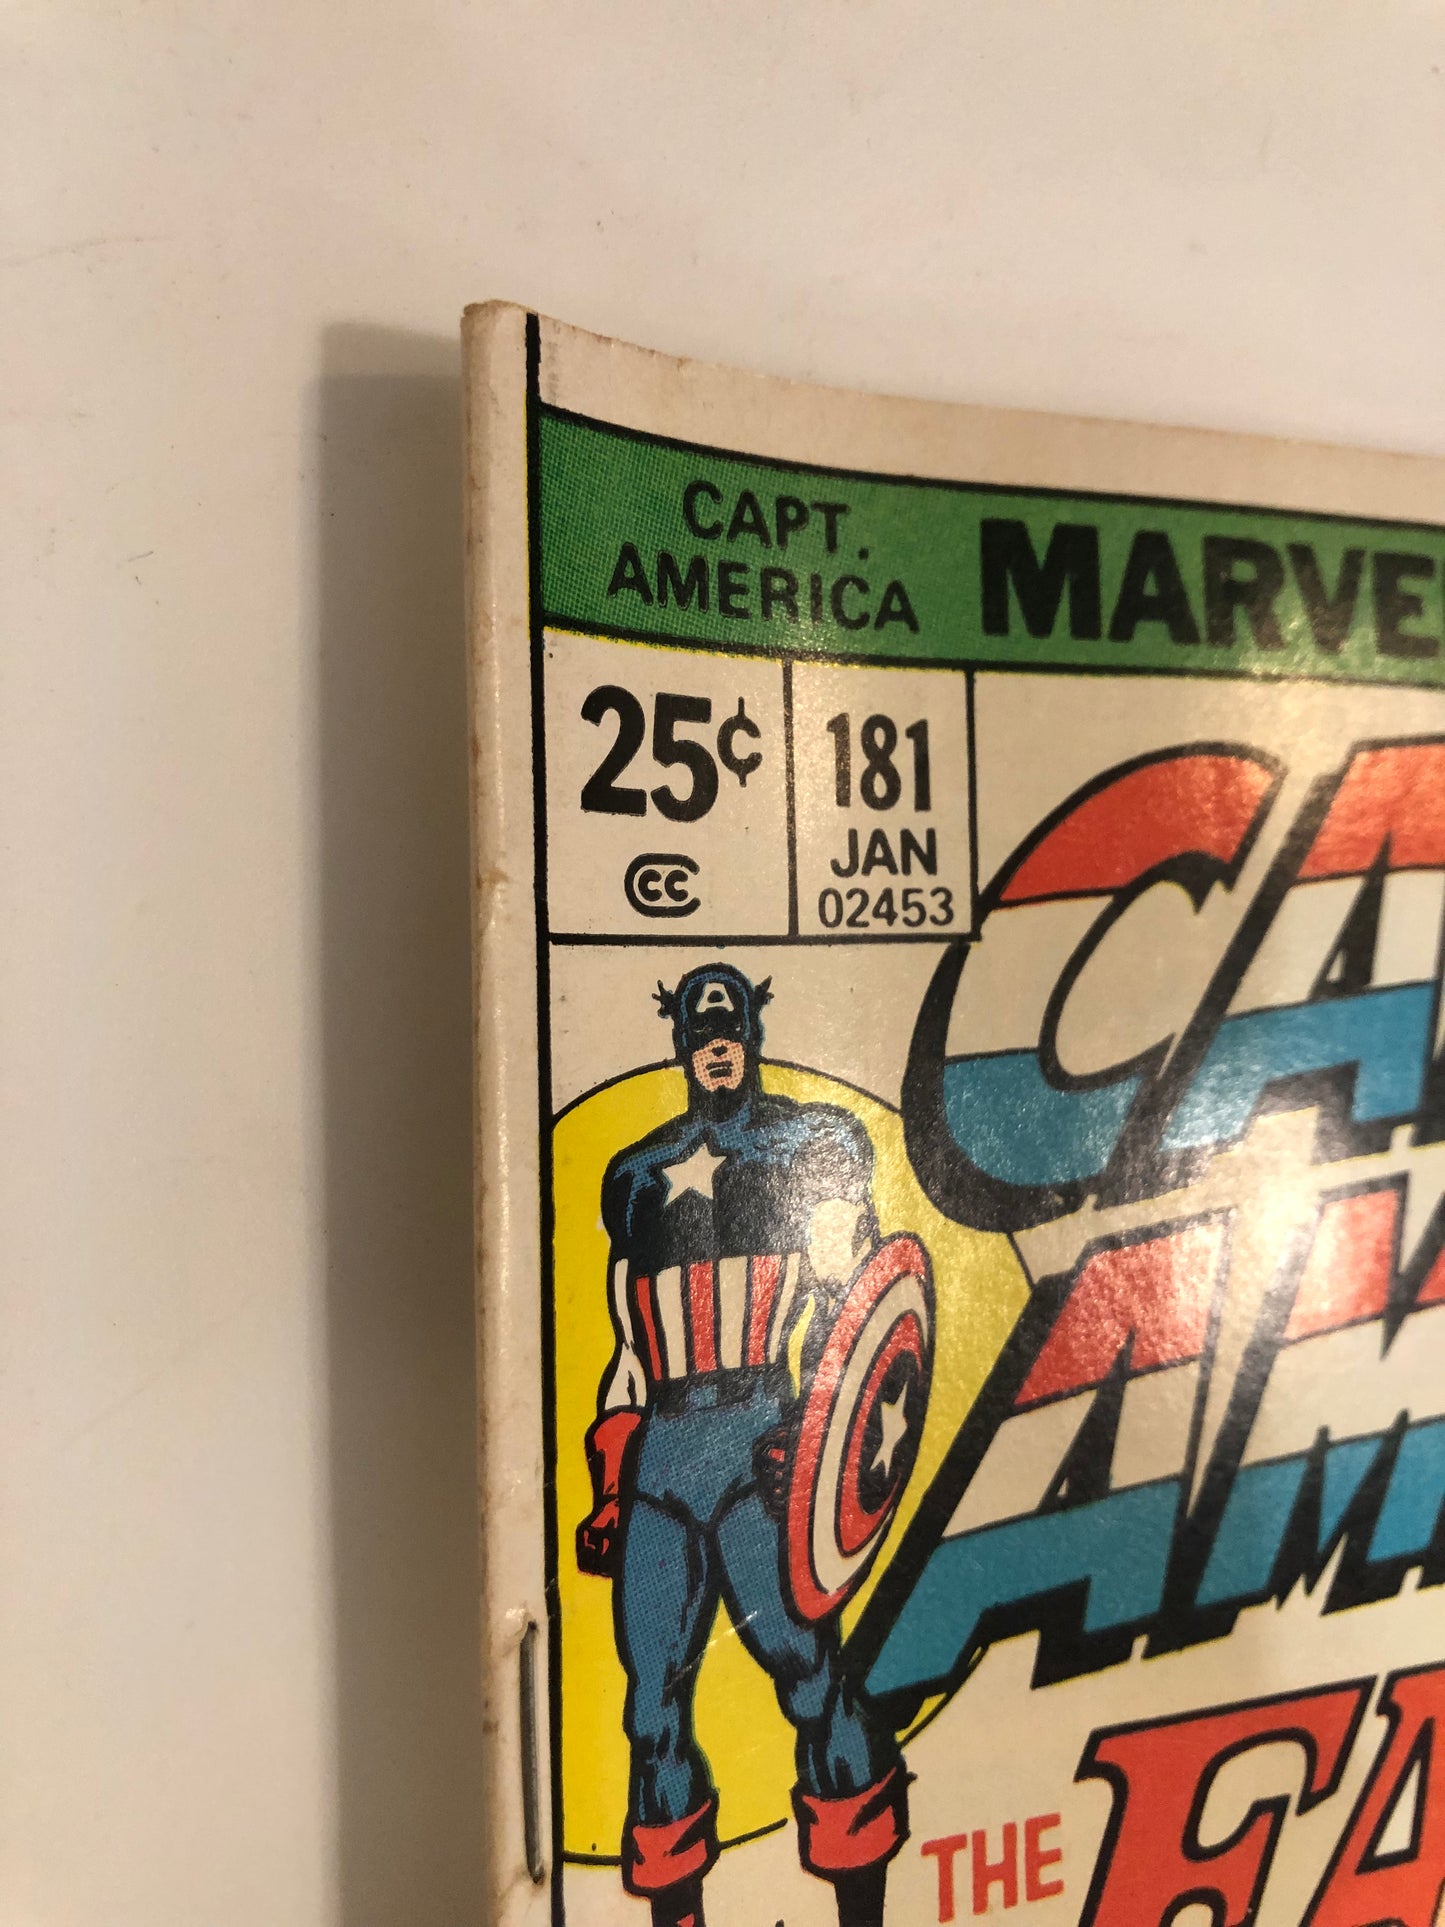 Captain America #181